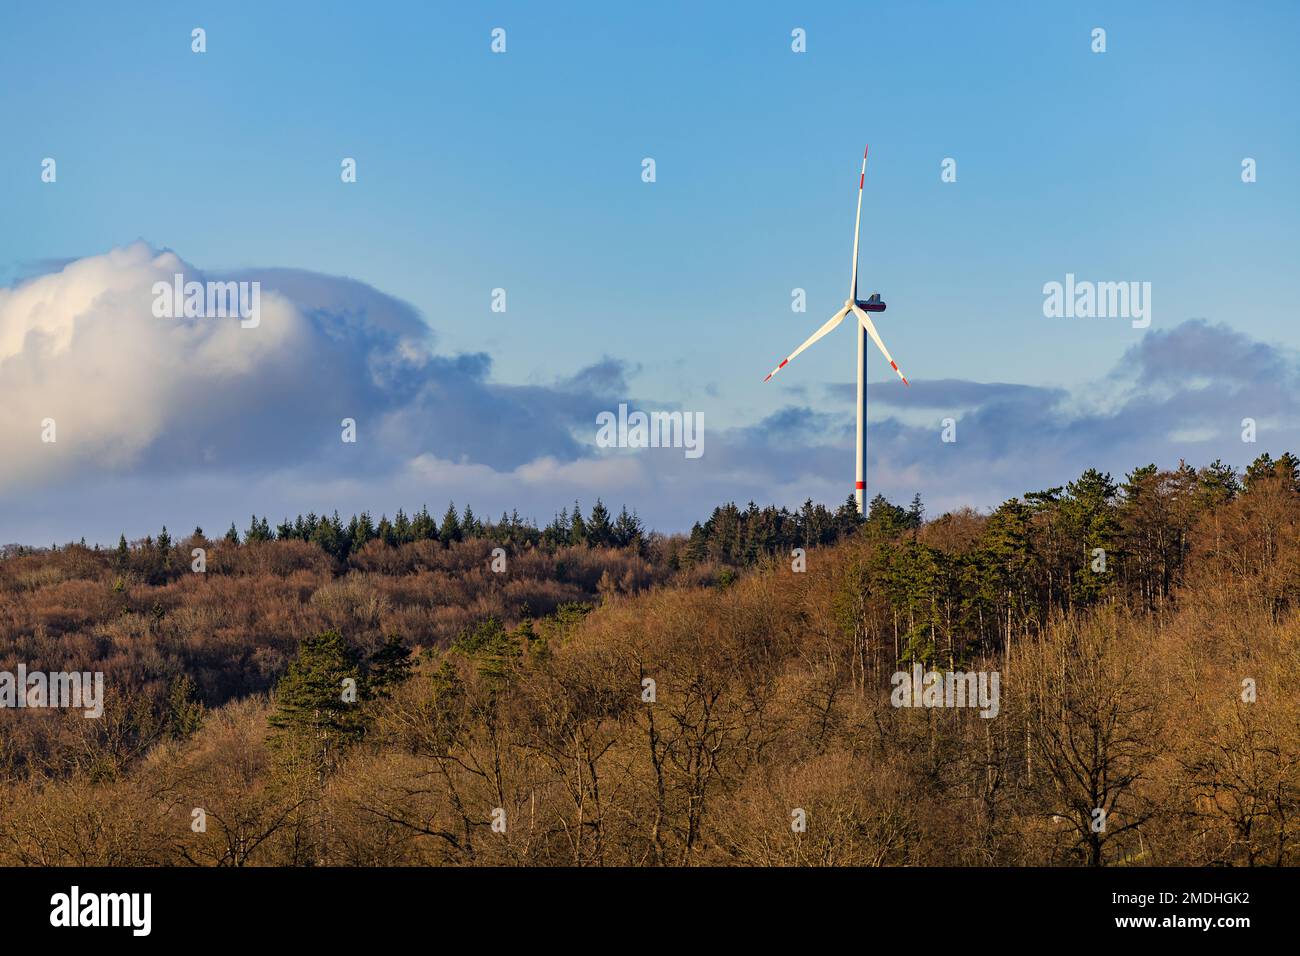 Paesaggio con un'unica turbina eolica e molti alberi in una foresta mista per produrre energia sostenibile in Germania Foto Stock